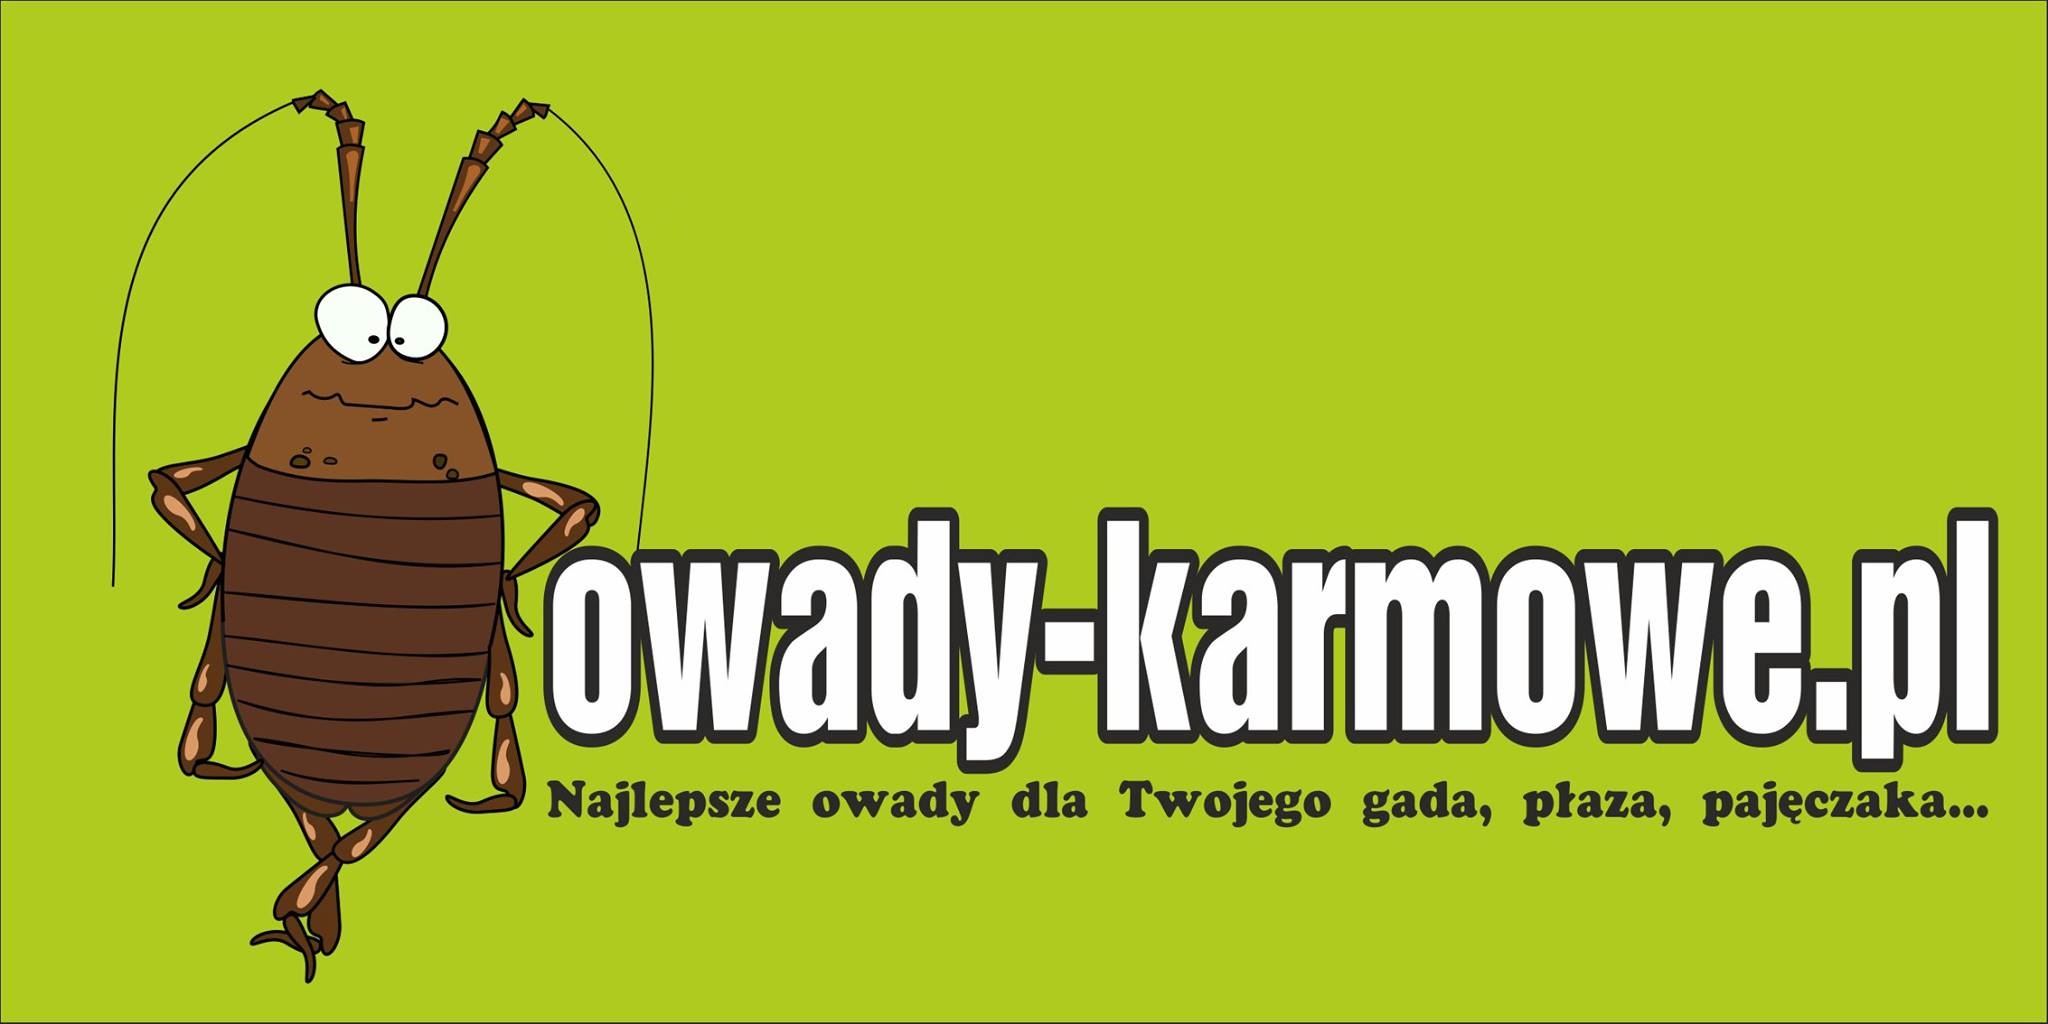 owady-karmowe.pl